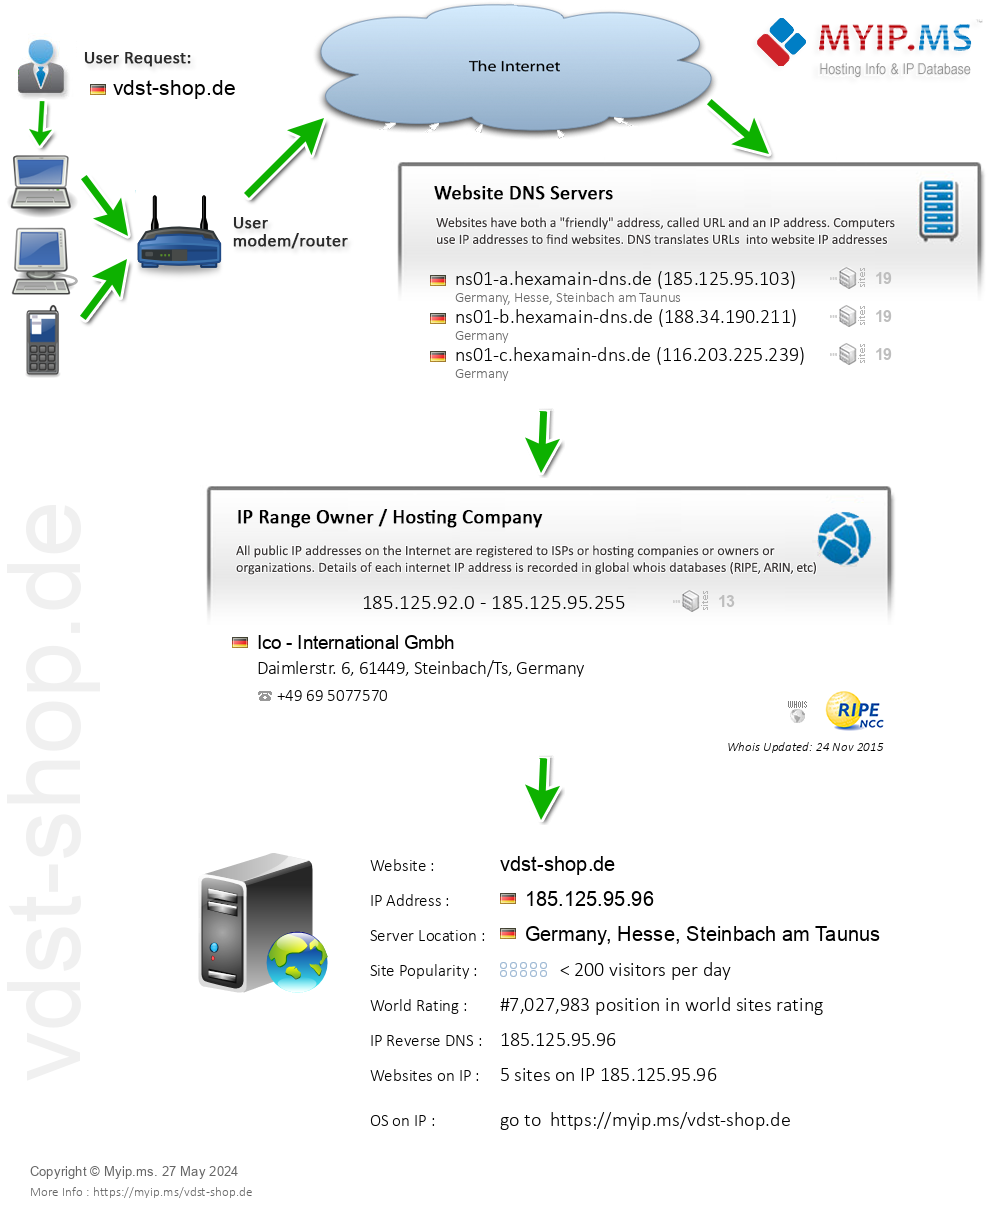 Vdst-shop.de - Website Hosting Visual IP Diagram